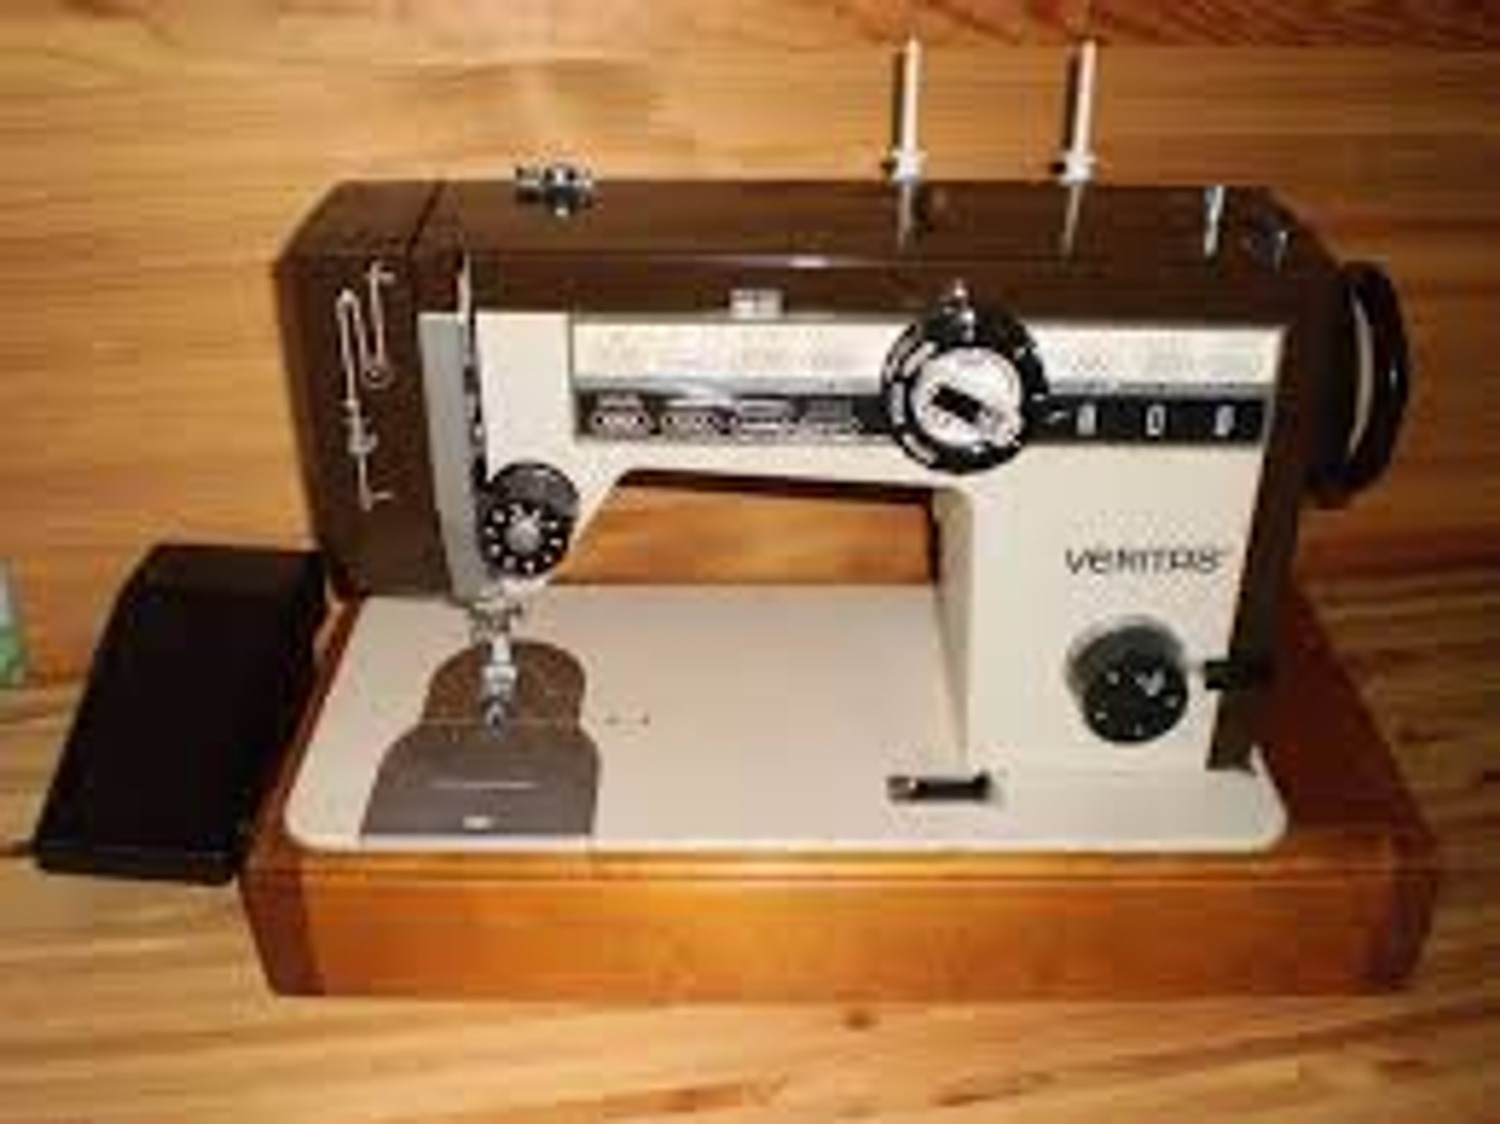 Veritas est. Веритас швейная машина 8014/43. Швейная машинка veritas 8014/43. Швейная машина Веритас ножная 8014. Швейная машинка Веритас8014.49.